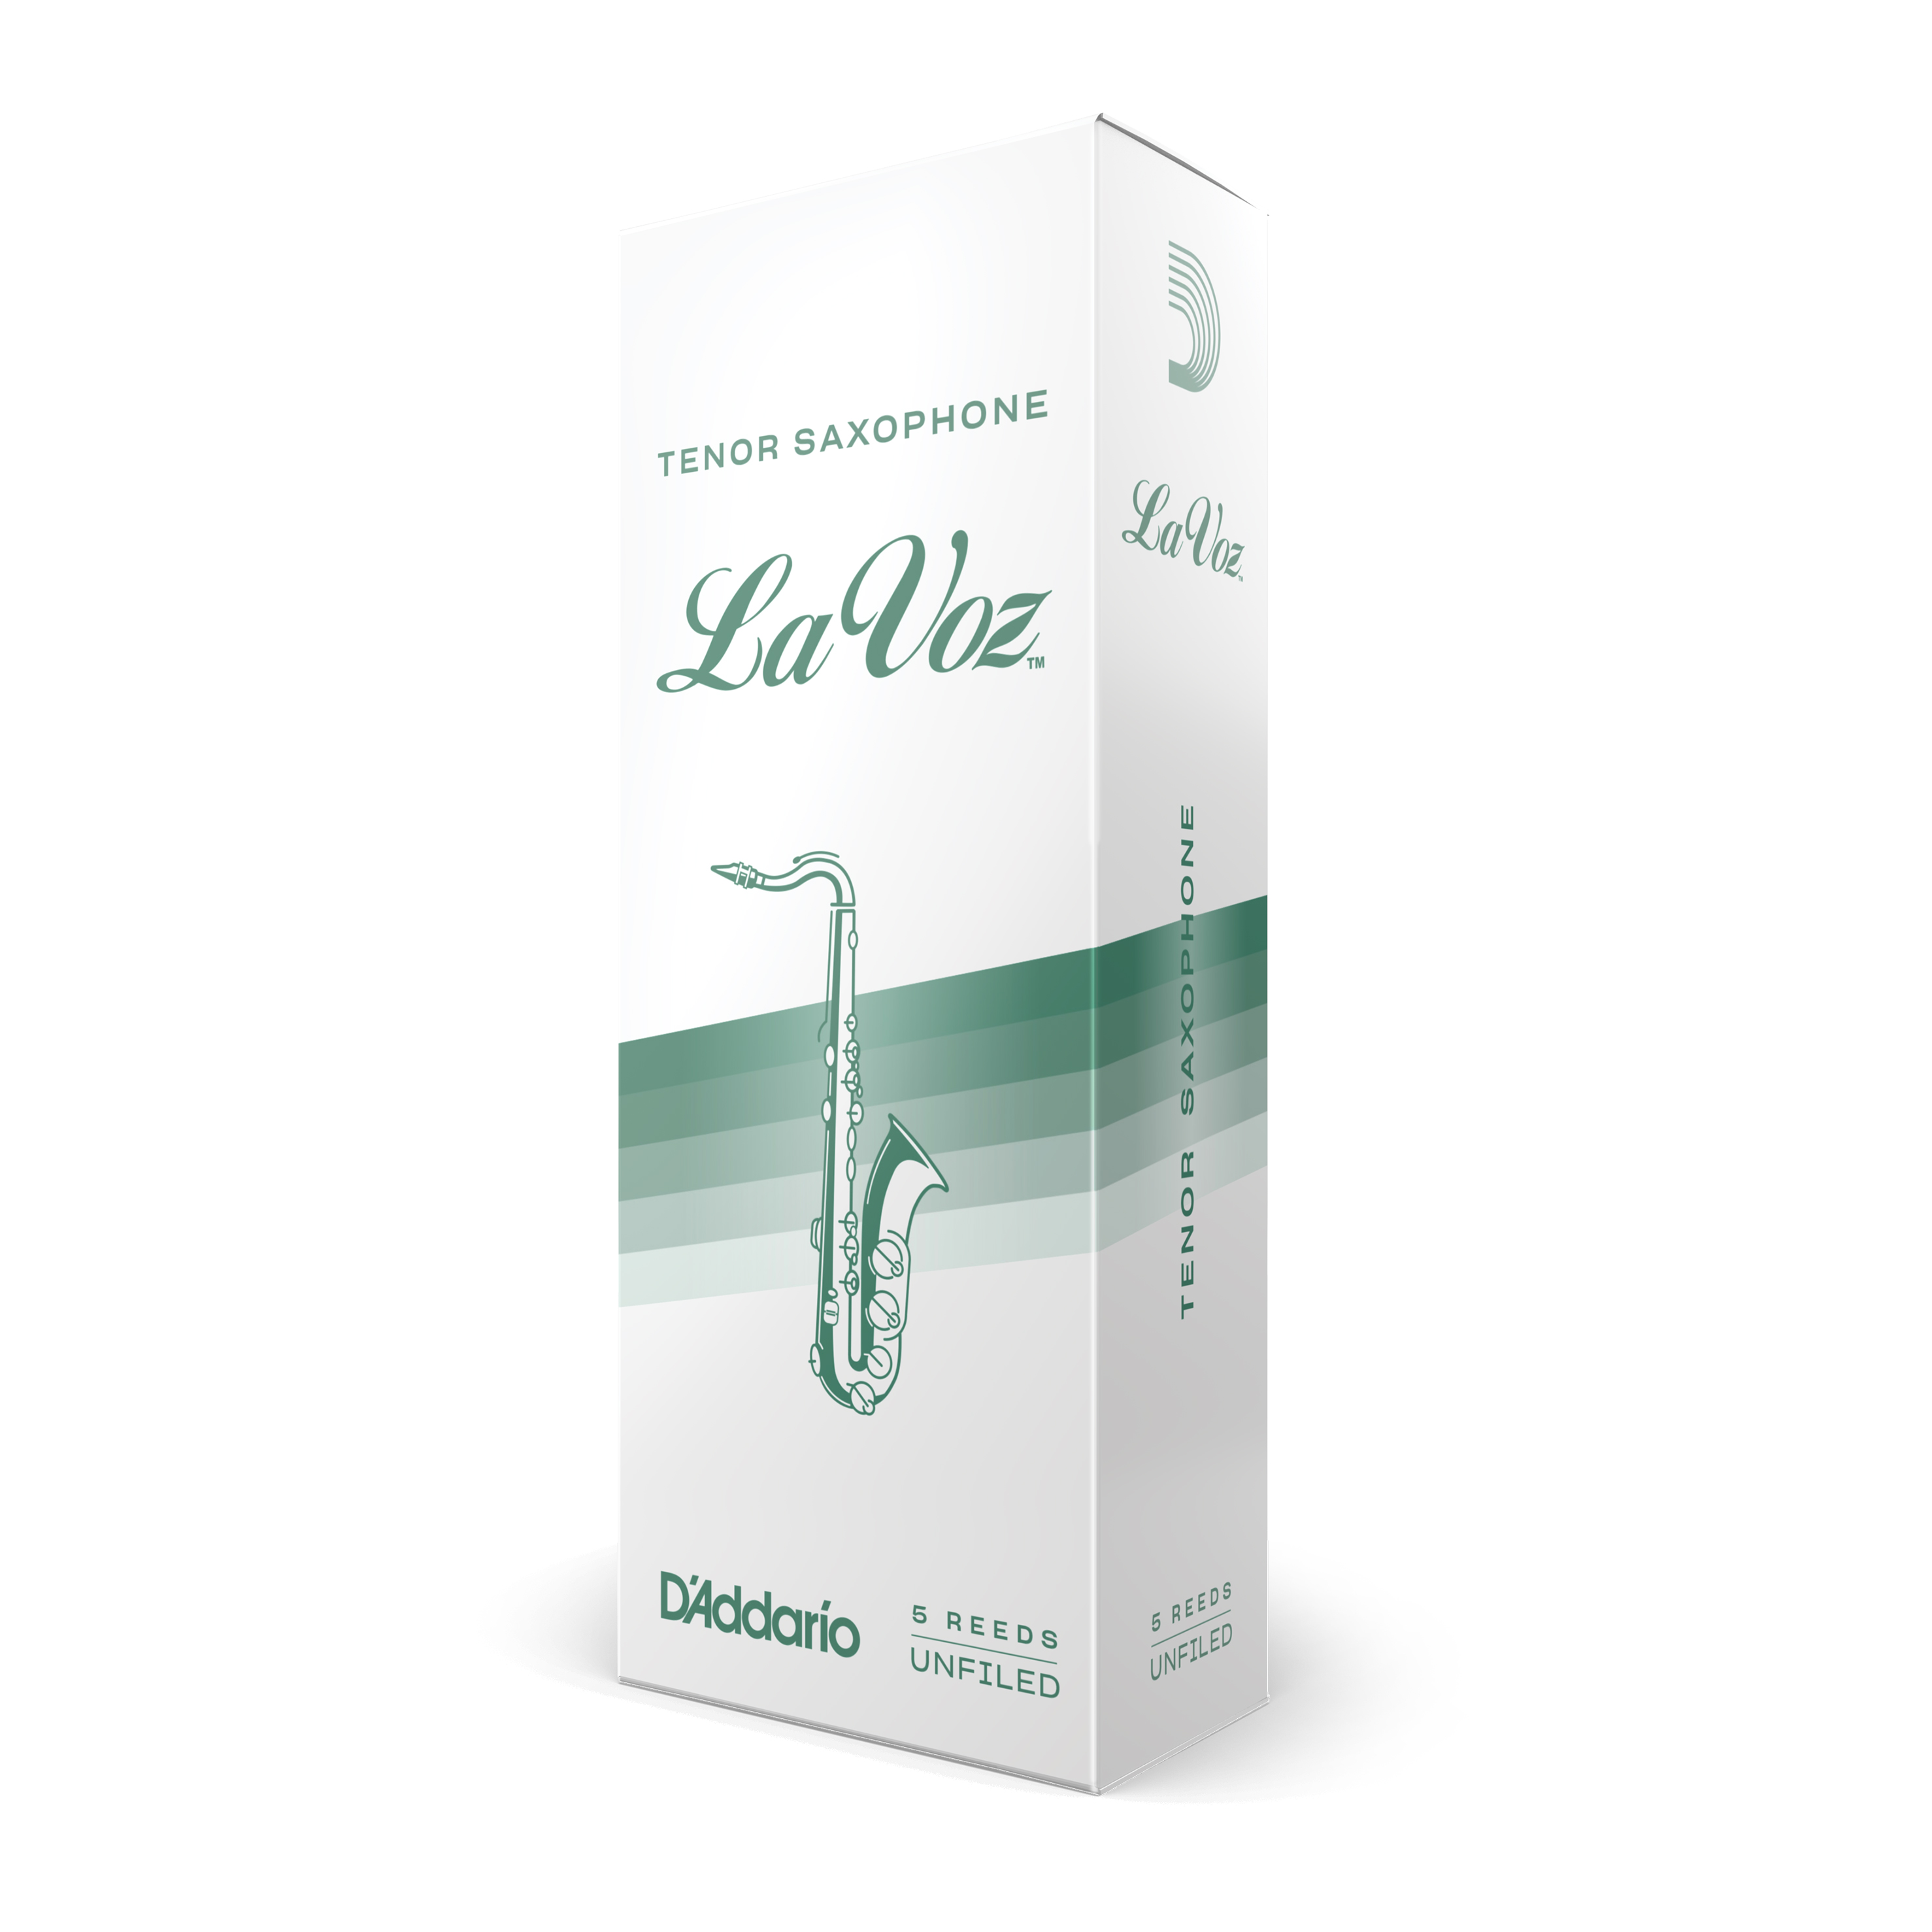 Box of Five La Voz by D'addario tenor saxophone reeds